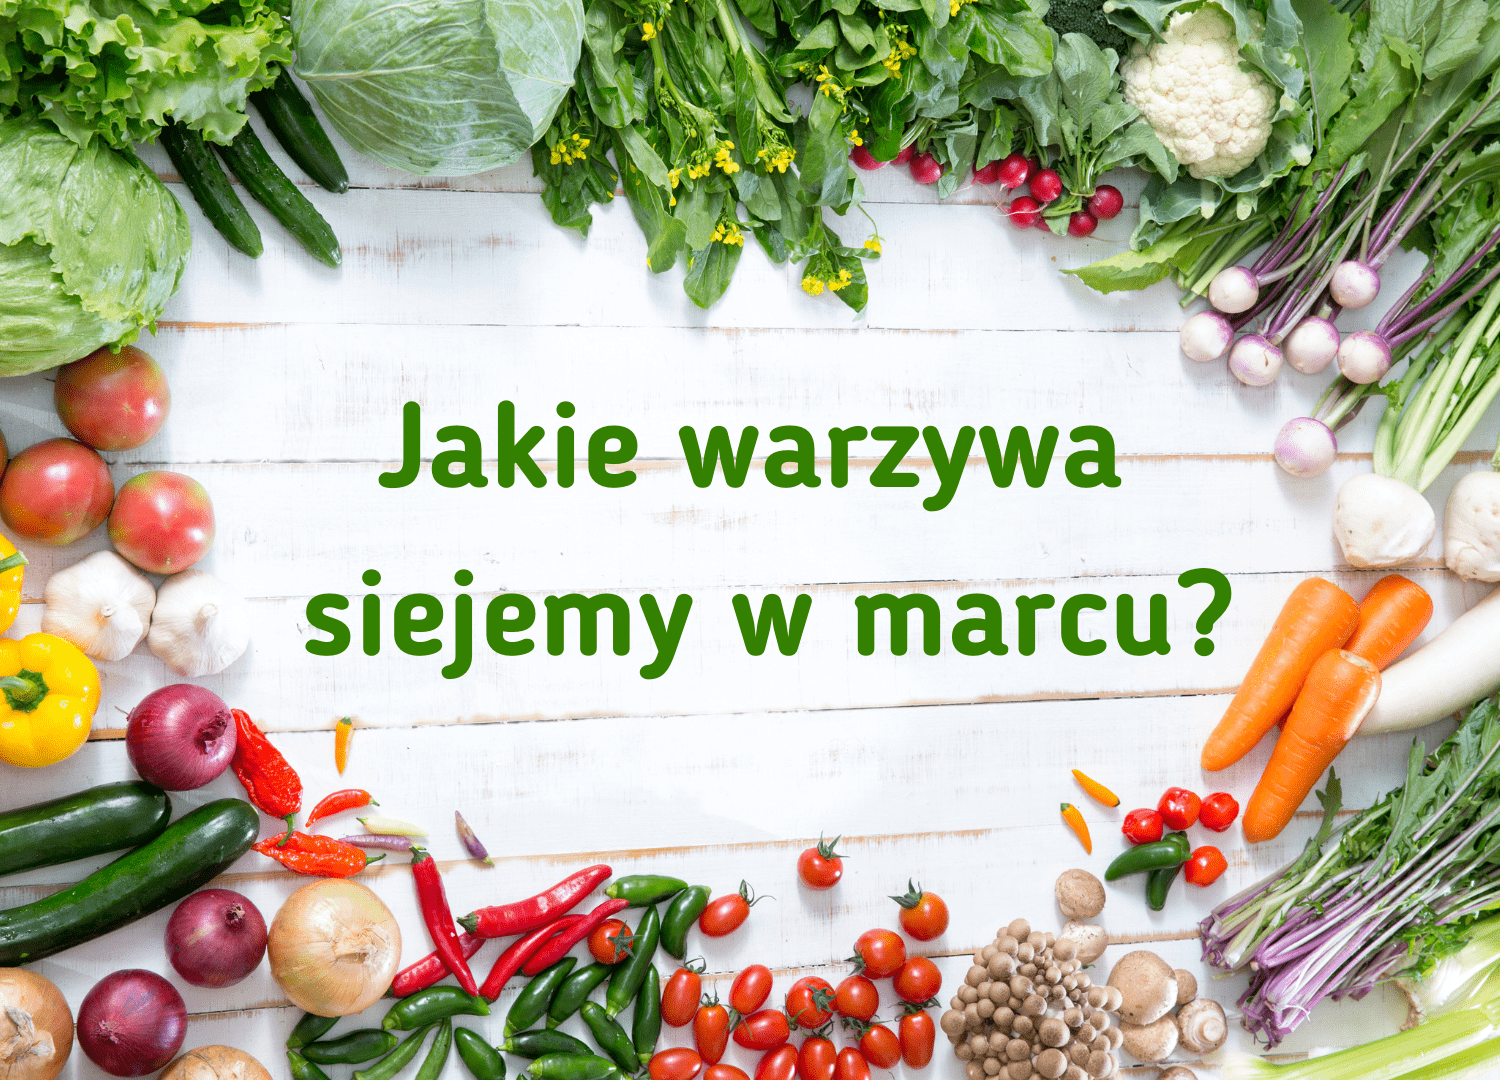 Jakie warzywa siejemy w marcu?